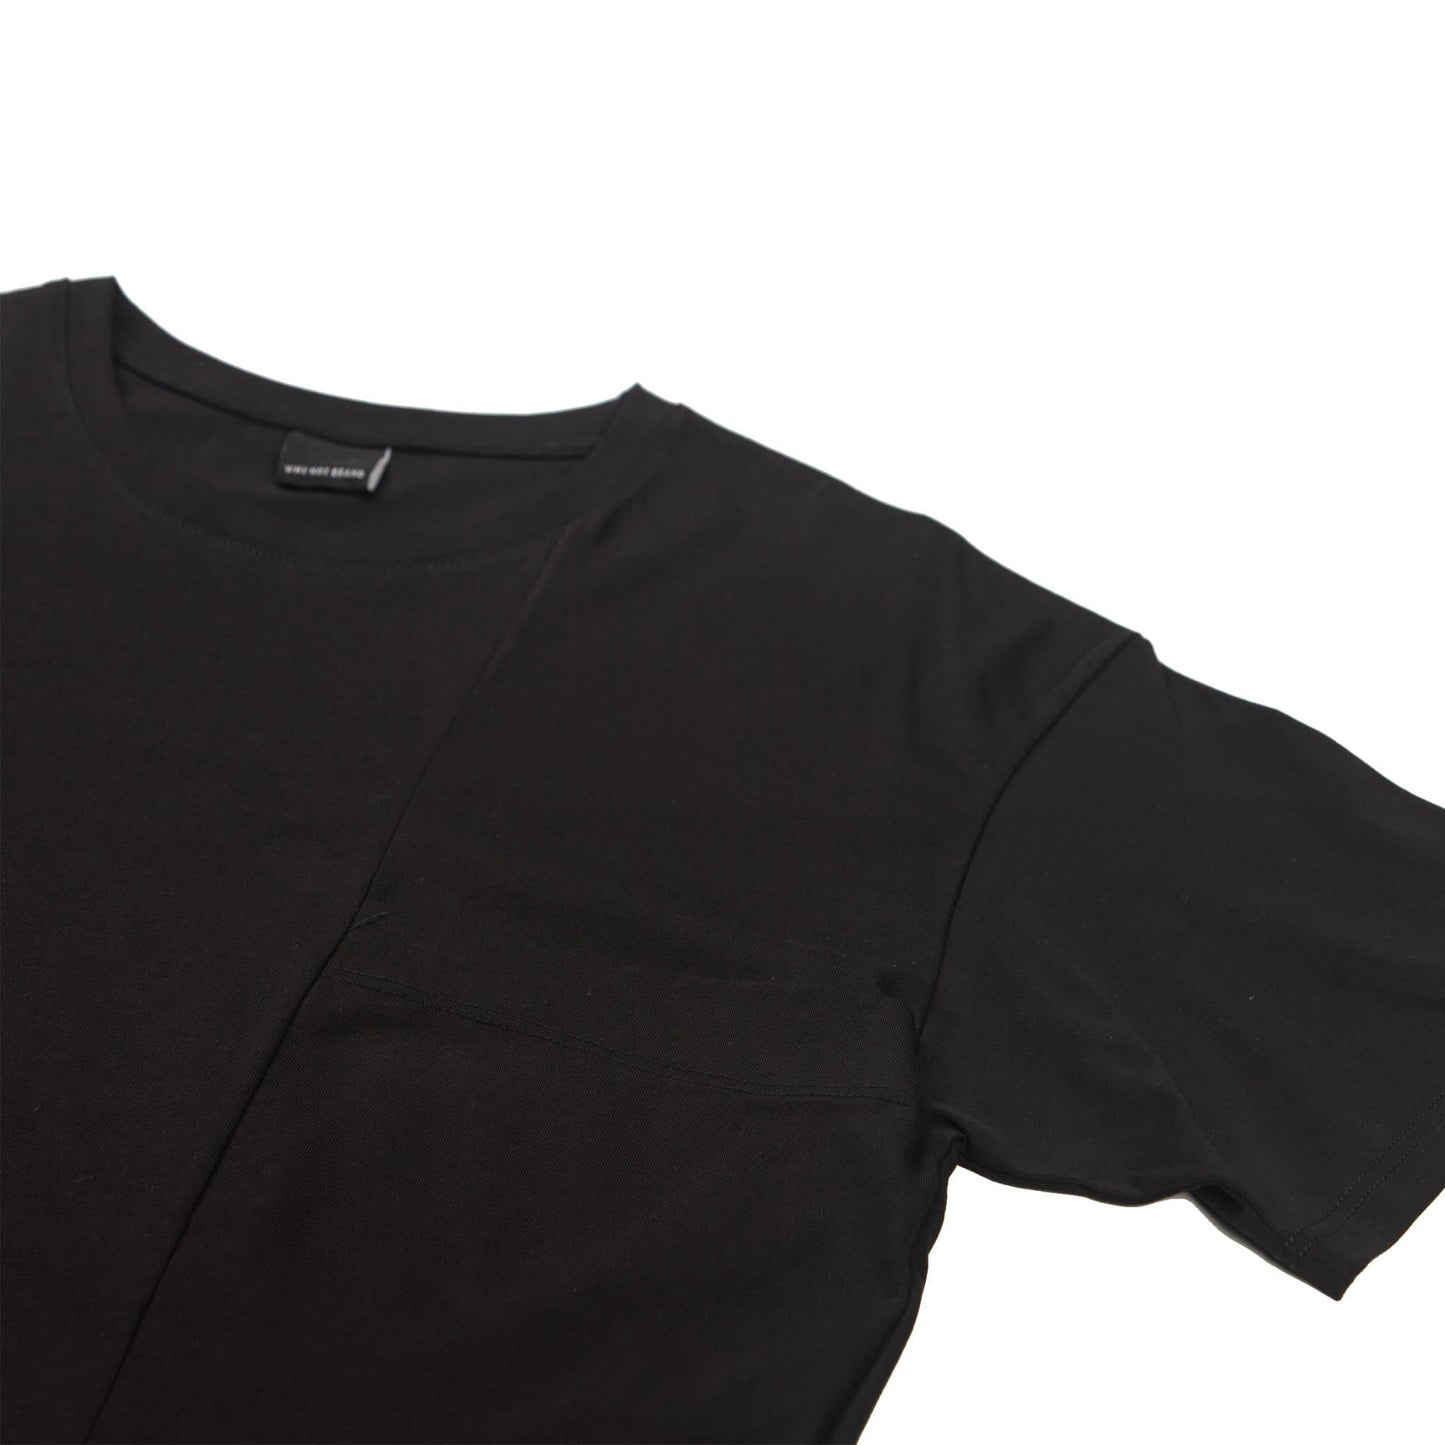 Ανδρικο κοντομανικο T-Shirt με τσεπη στο στηθος TEE.22 - Shirt Lab store